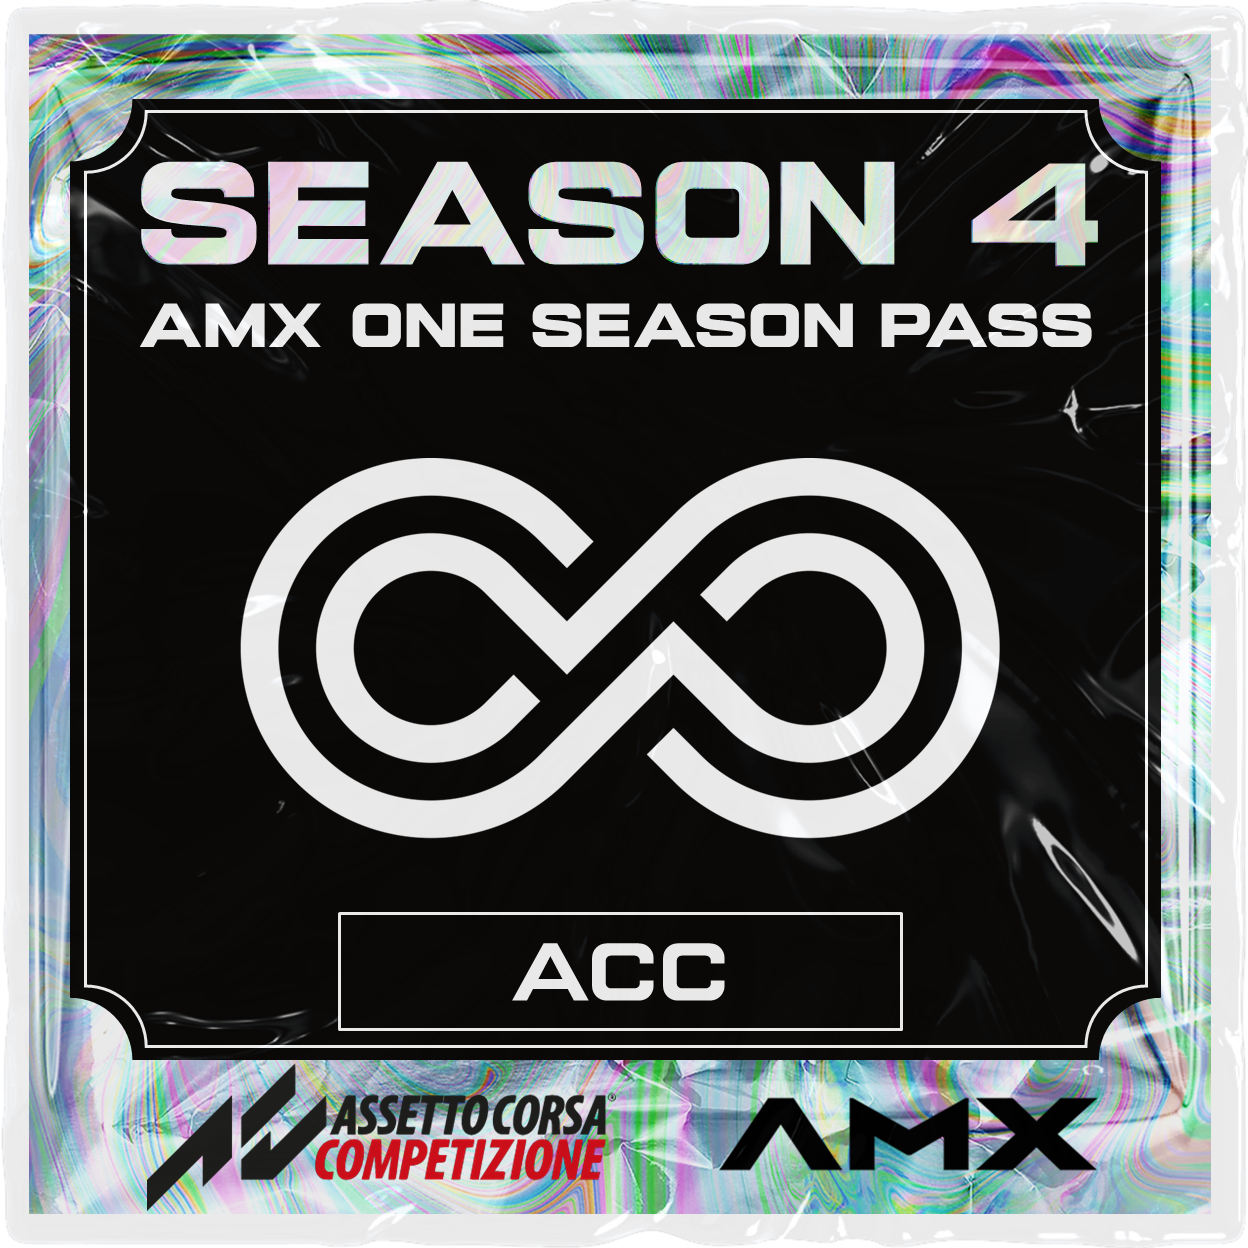 AMX ONE ACC Season Pass